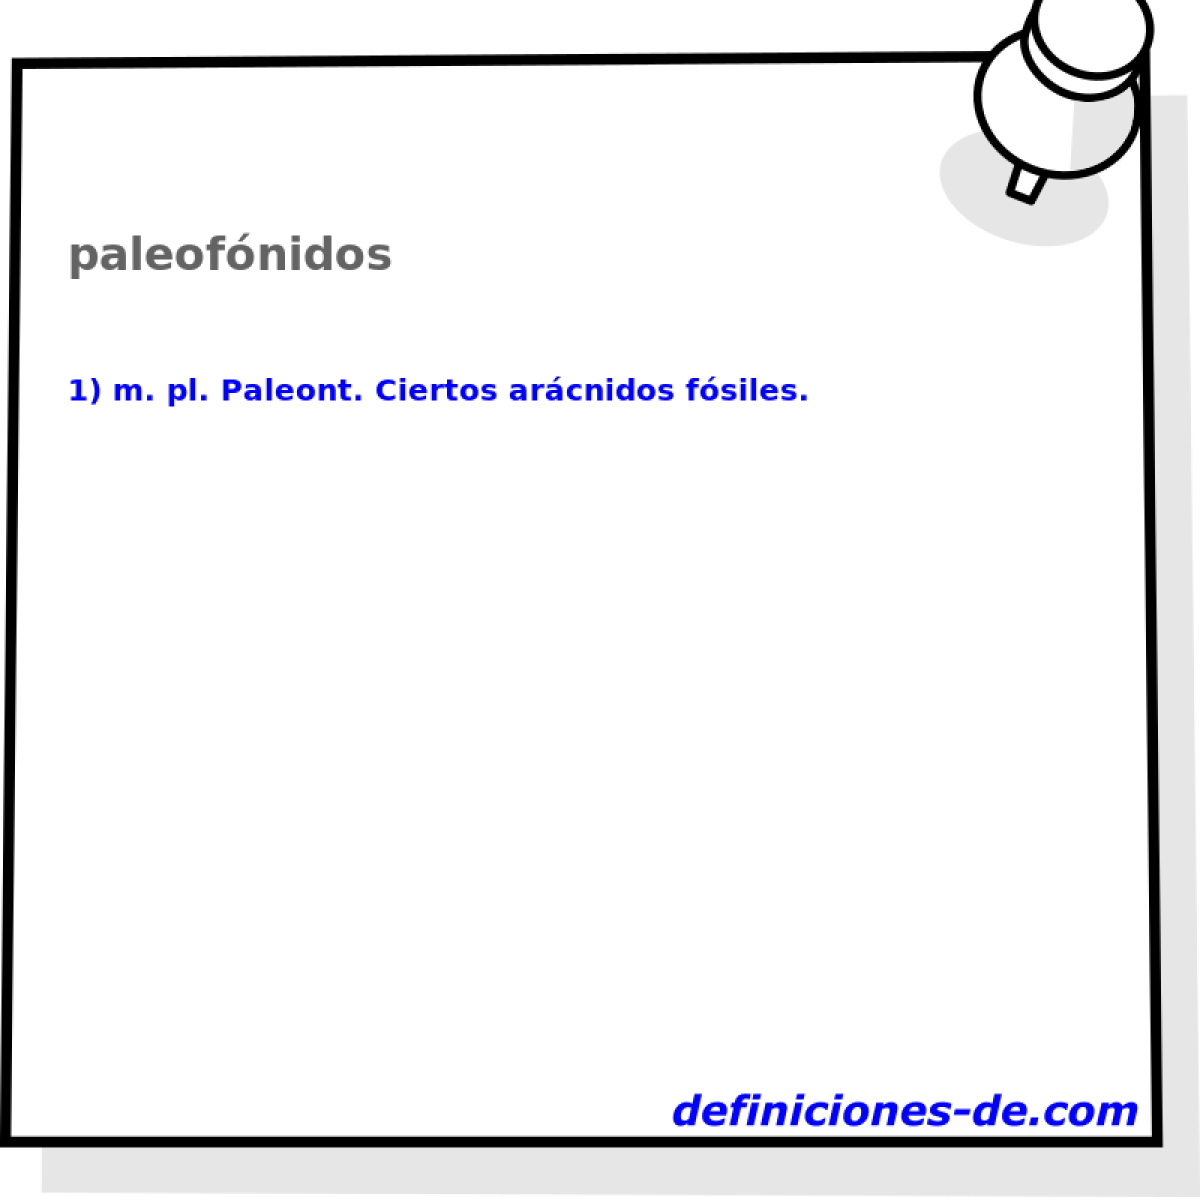 paleofnidos 